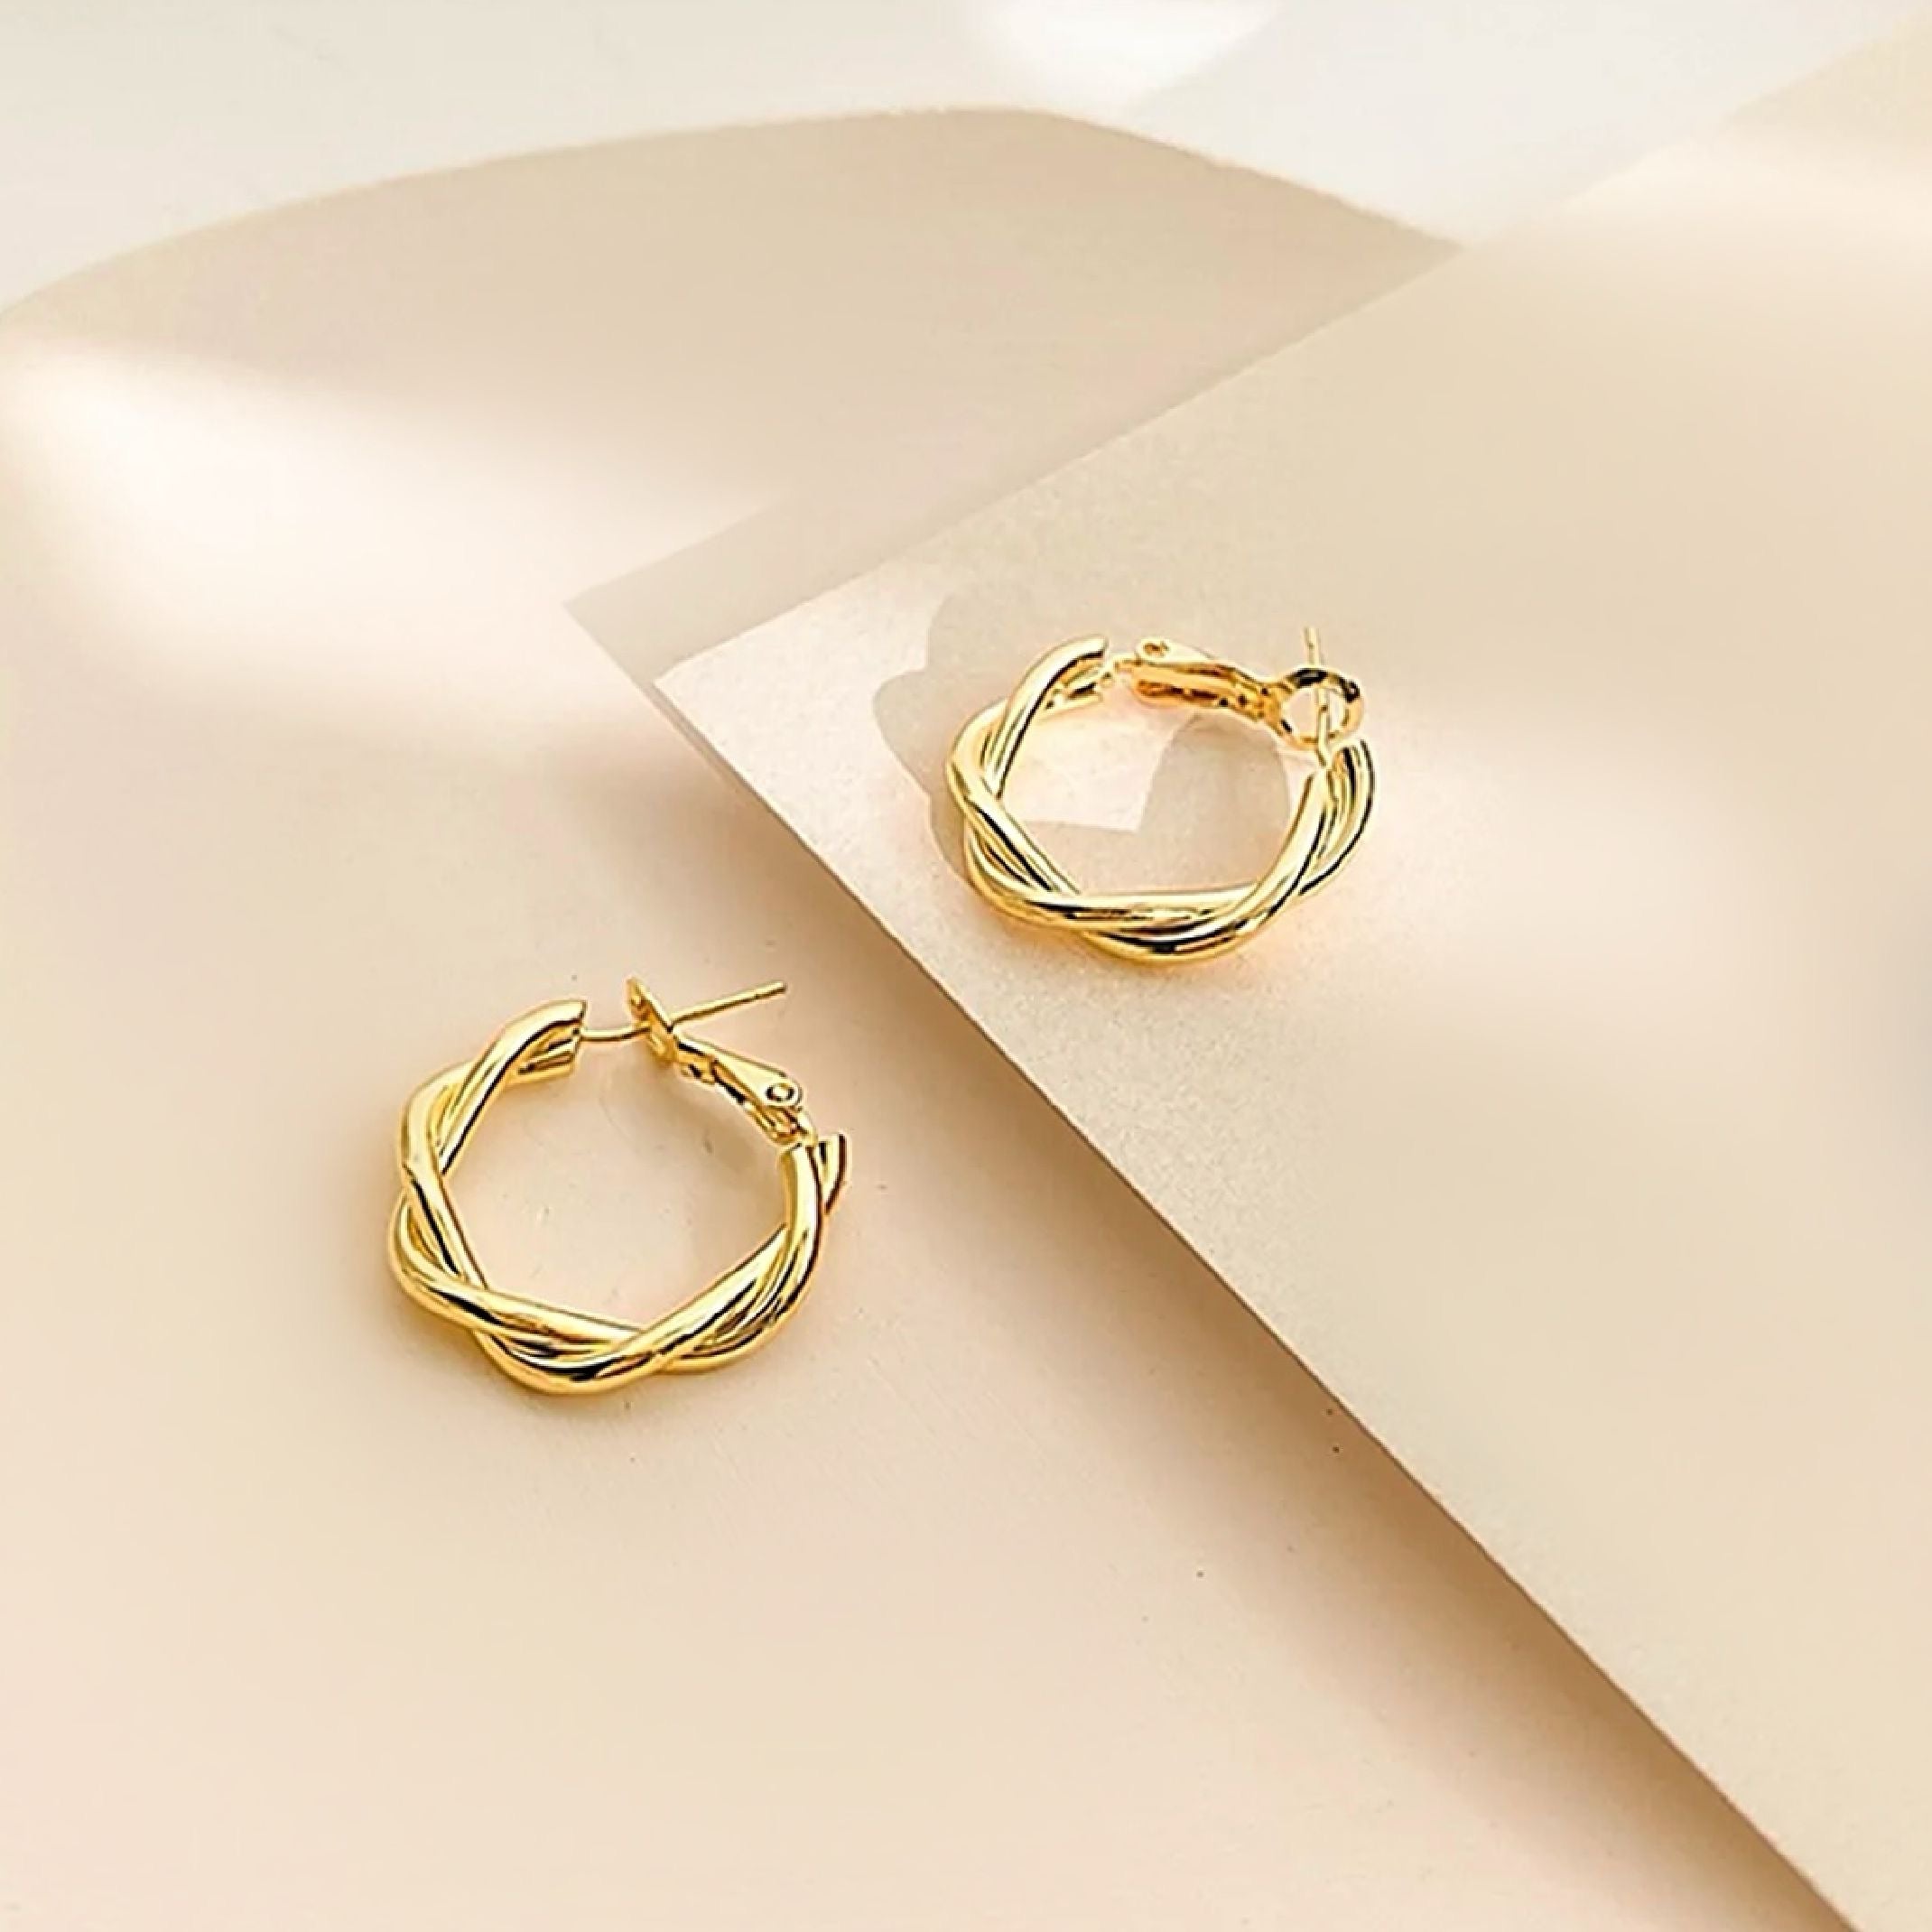 Gold twirl hoop earrings 